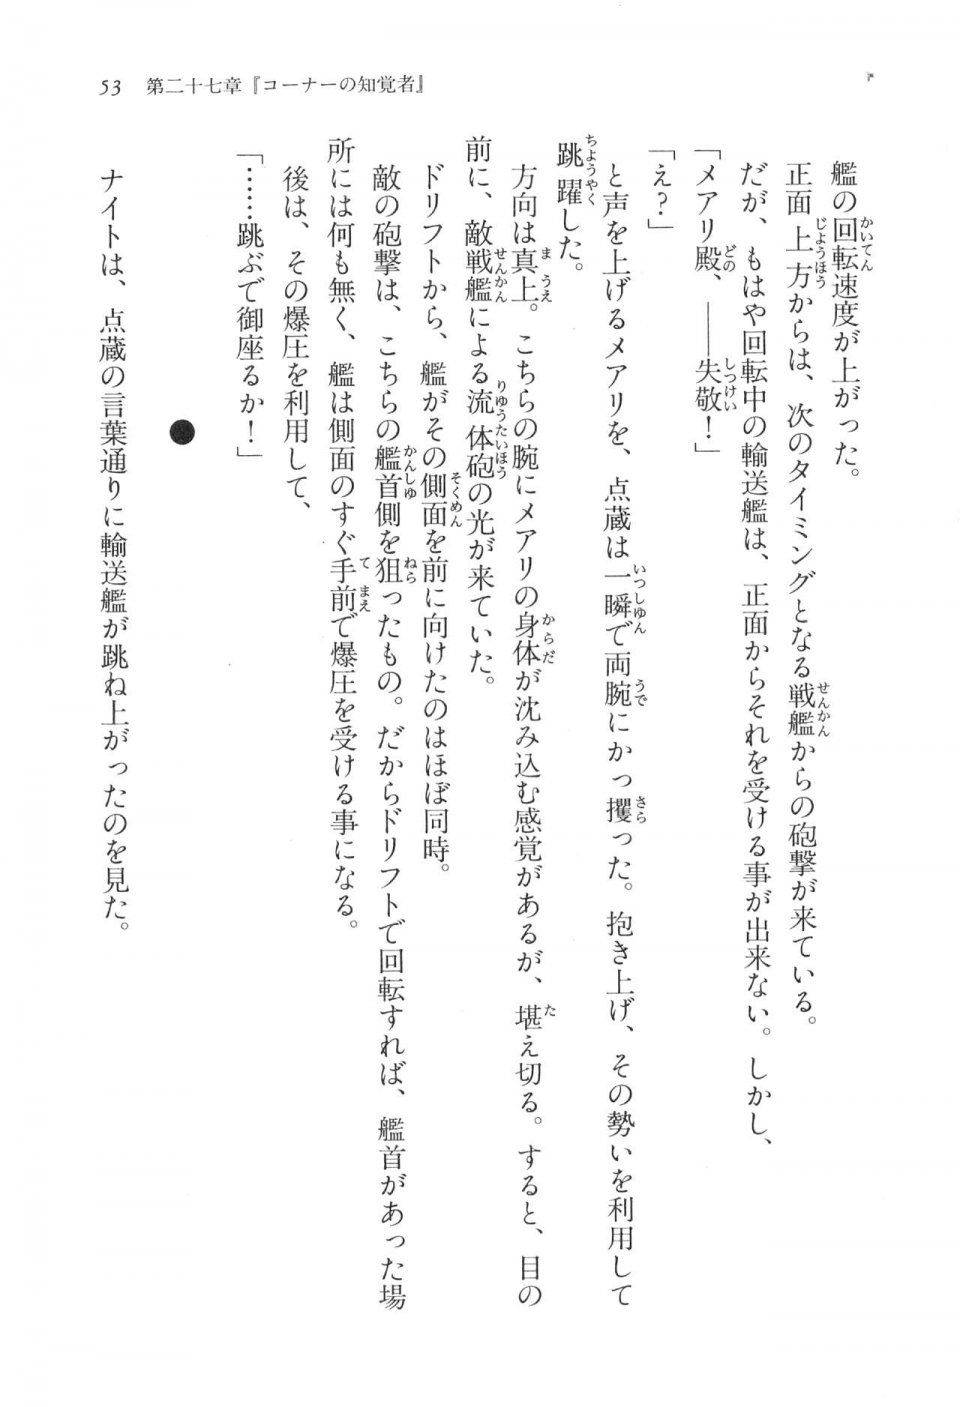 Kyoukai Senjou no Horizon LN Vol 17(7B) - Photo #53